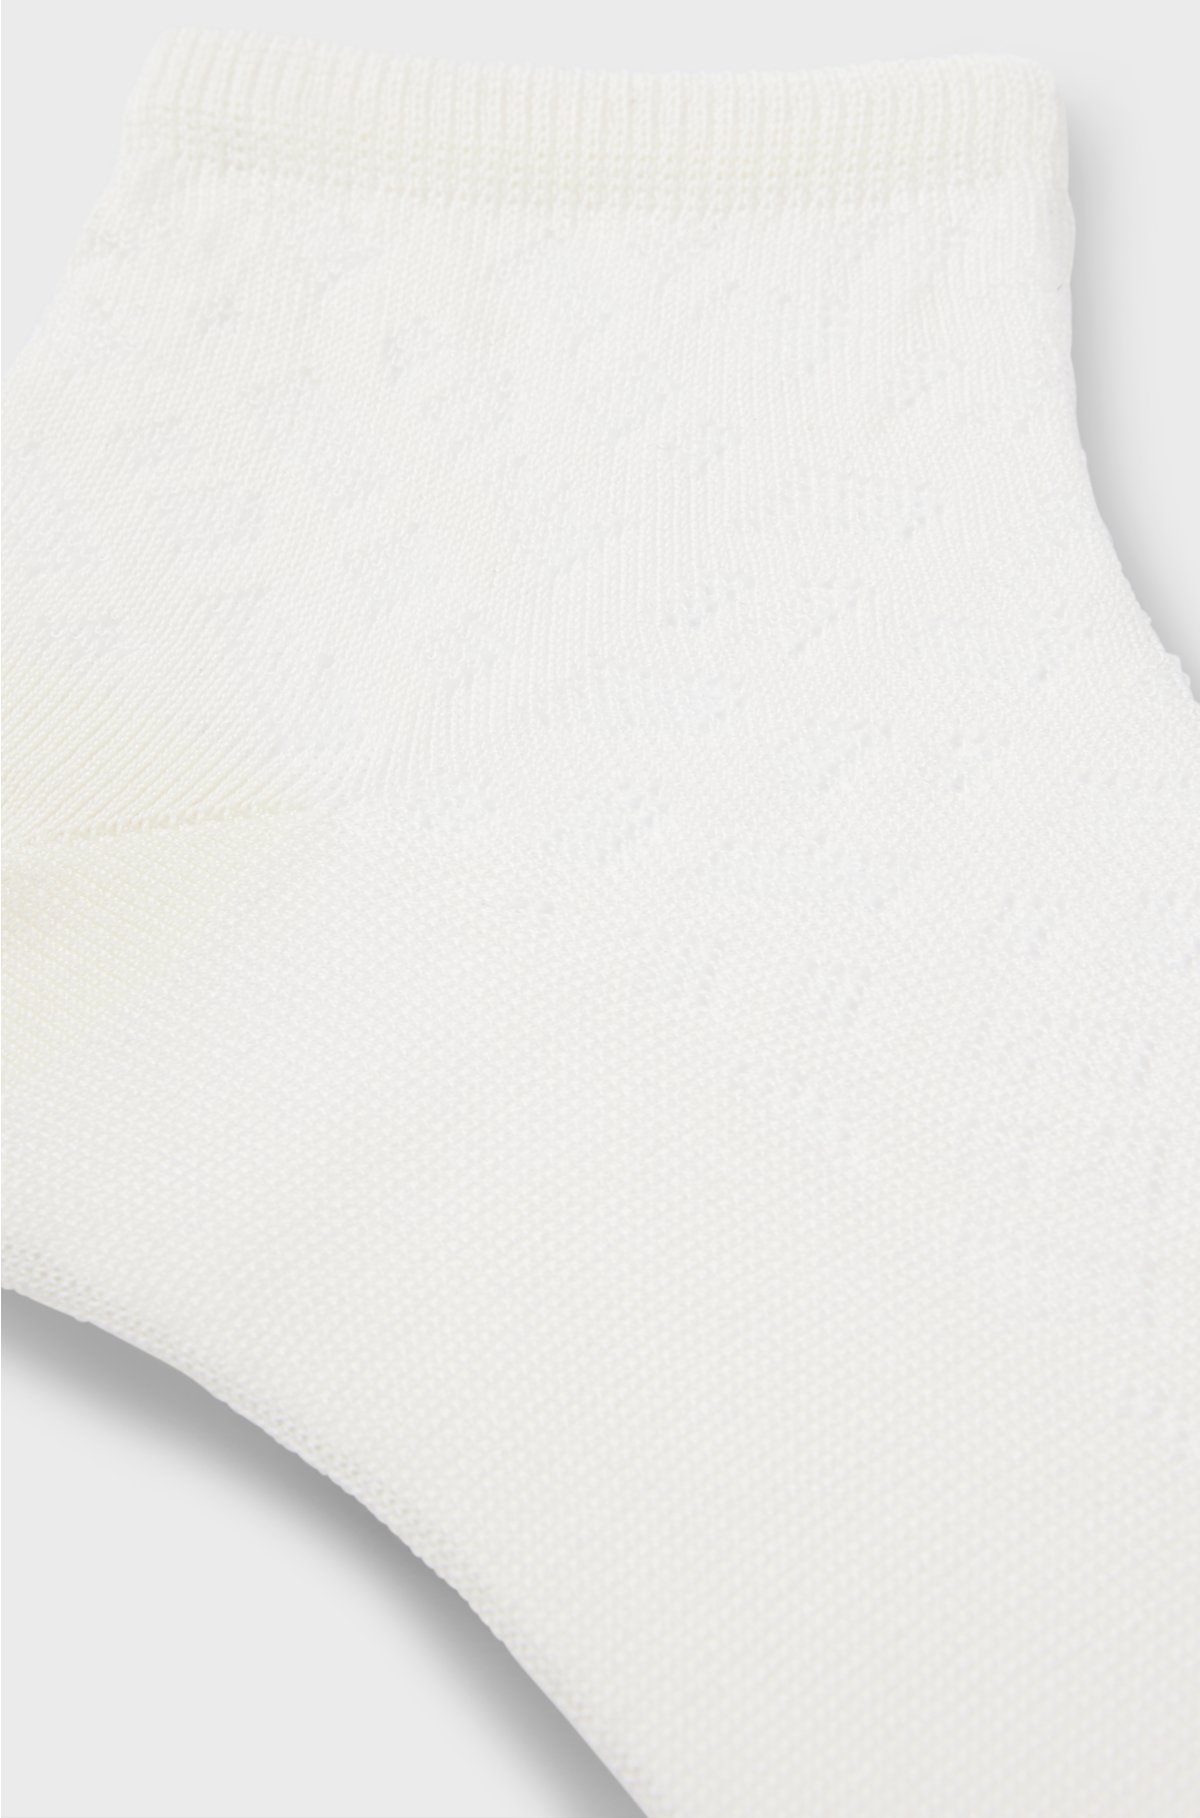 Monogram-knit short socks in a mercerised cotton blend, White